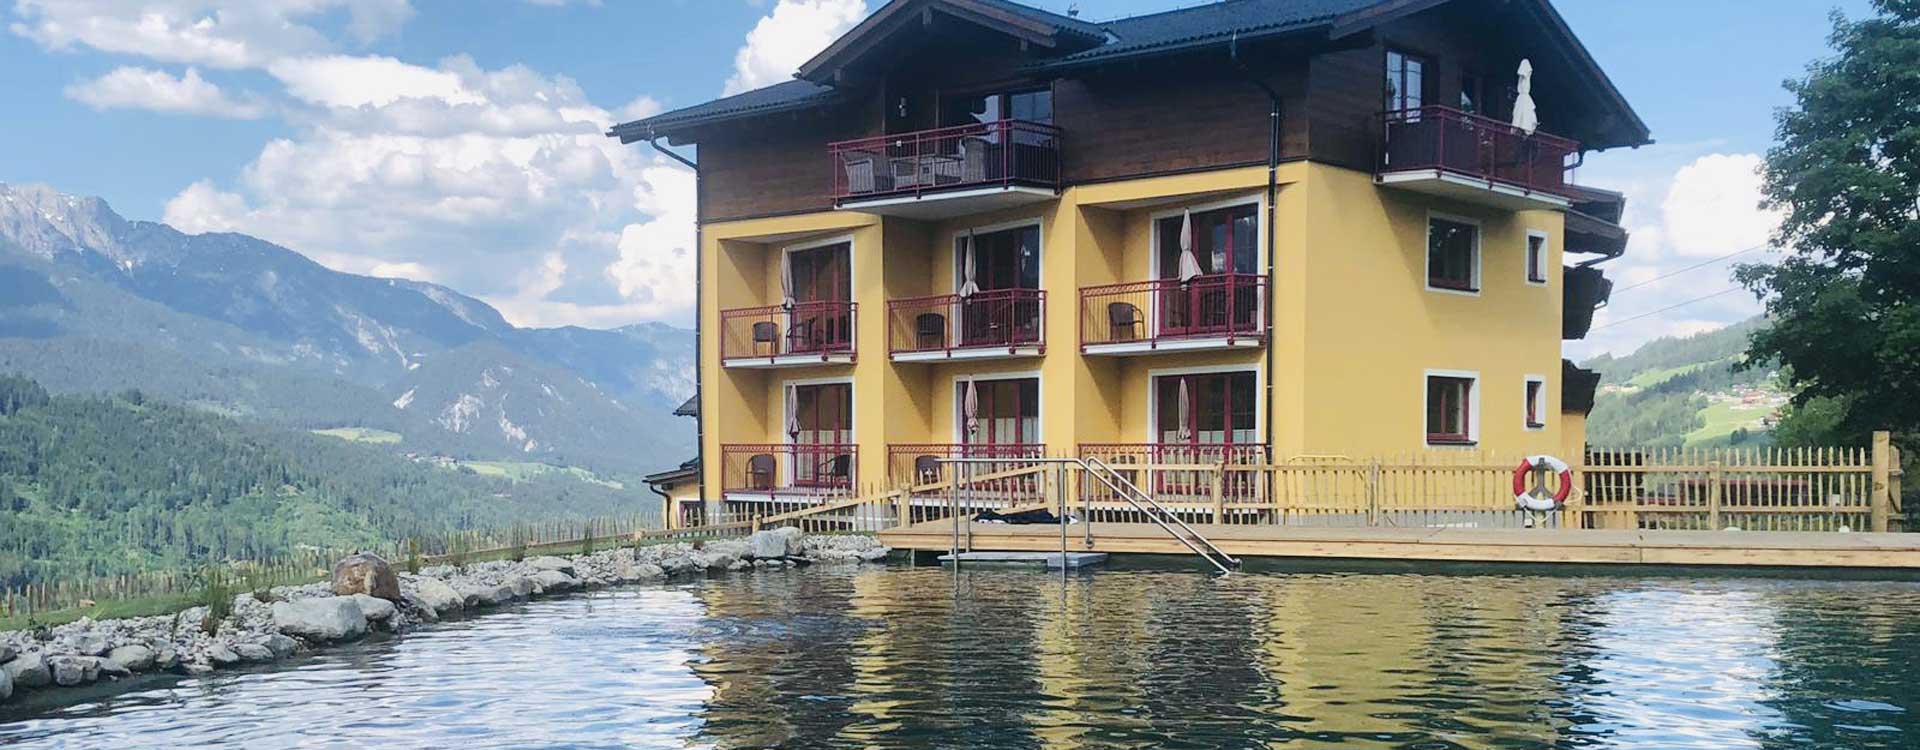 Erwachsenenhotel Burgfellnerhof direkt an einem Schwimmteich in der Steiermark